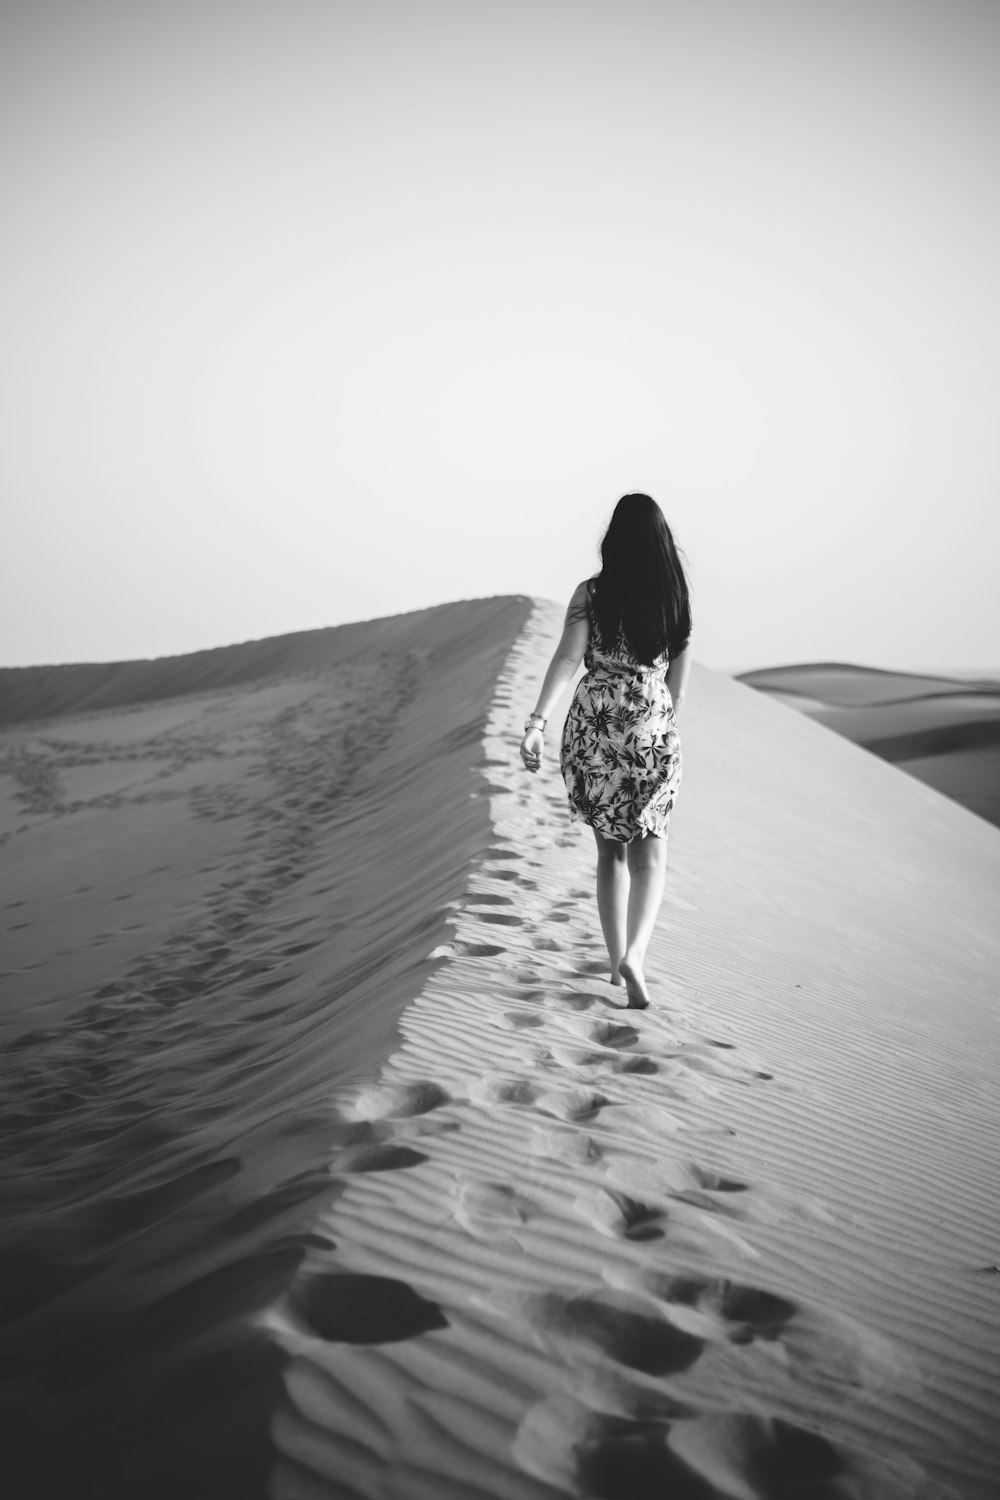 昼間の砂漠を歩く女性のグレースケール写真